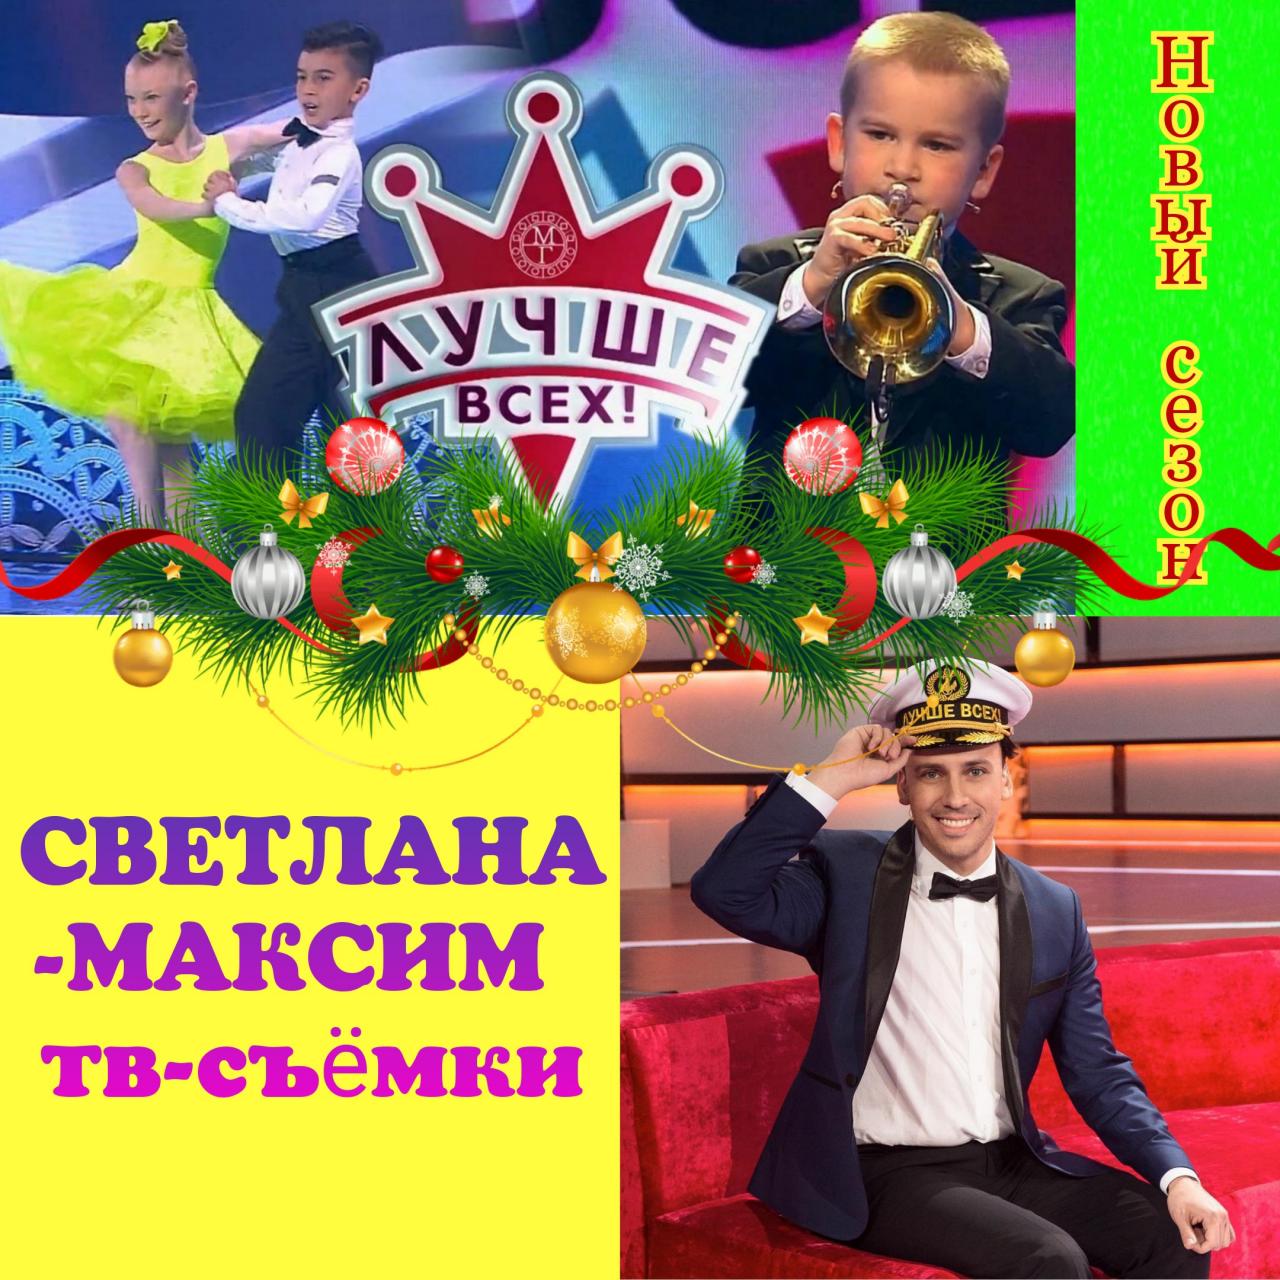 13, 14 декабря развлекательное шоу "ЛУЧШЕ ВСЕХ".